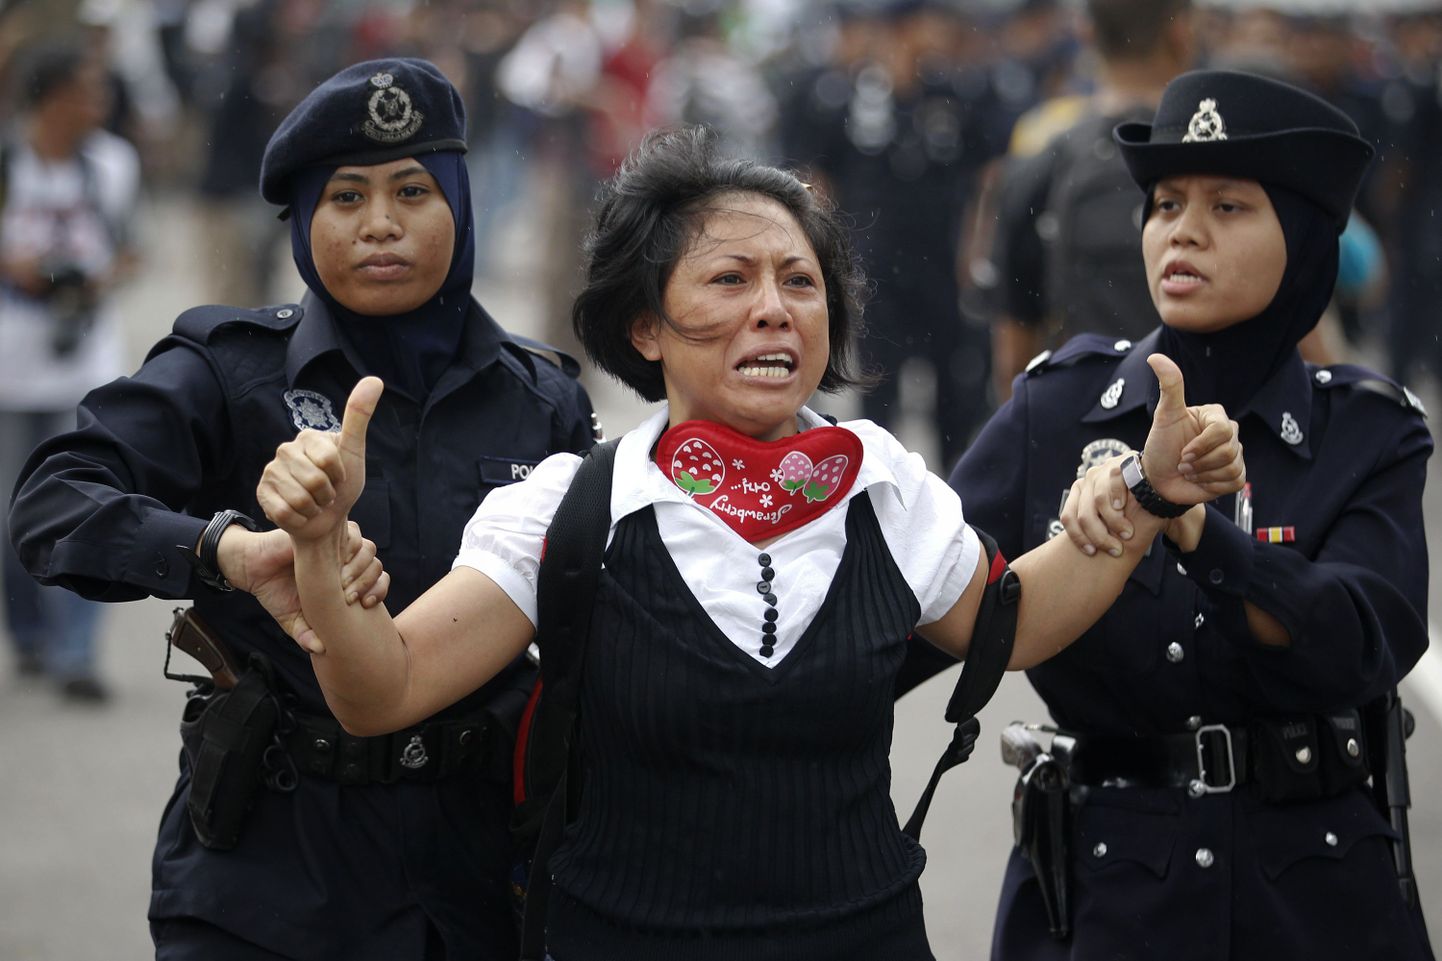 Malaisia politseinikud naissoost meeleavaldajat kinni pidamas.